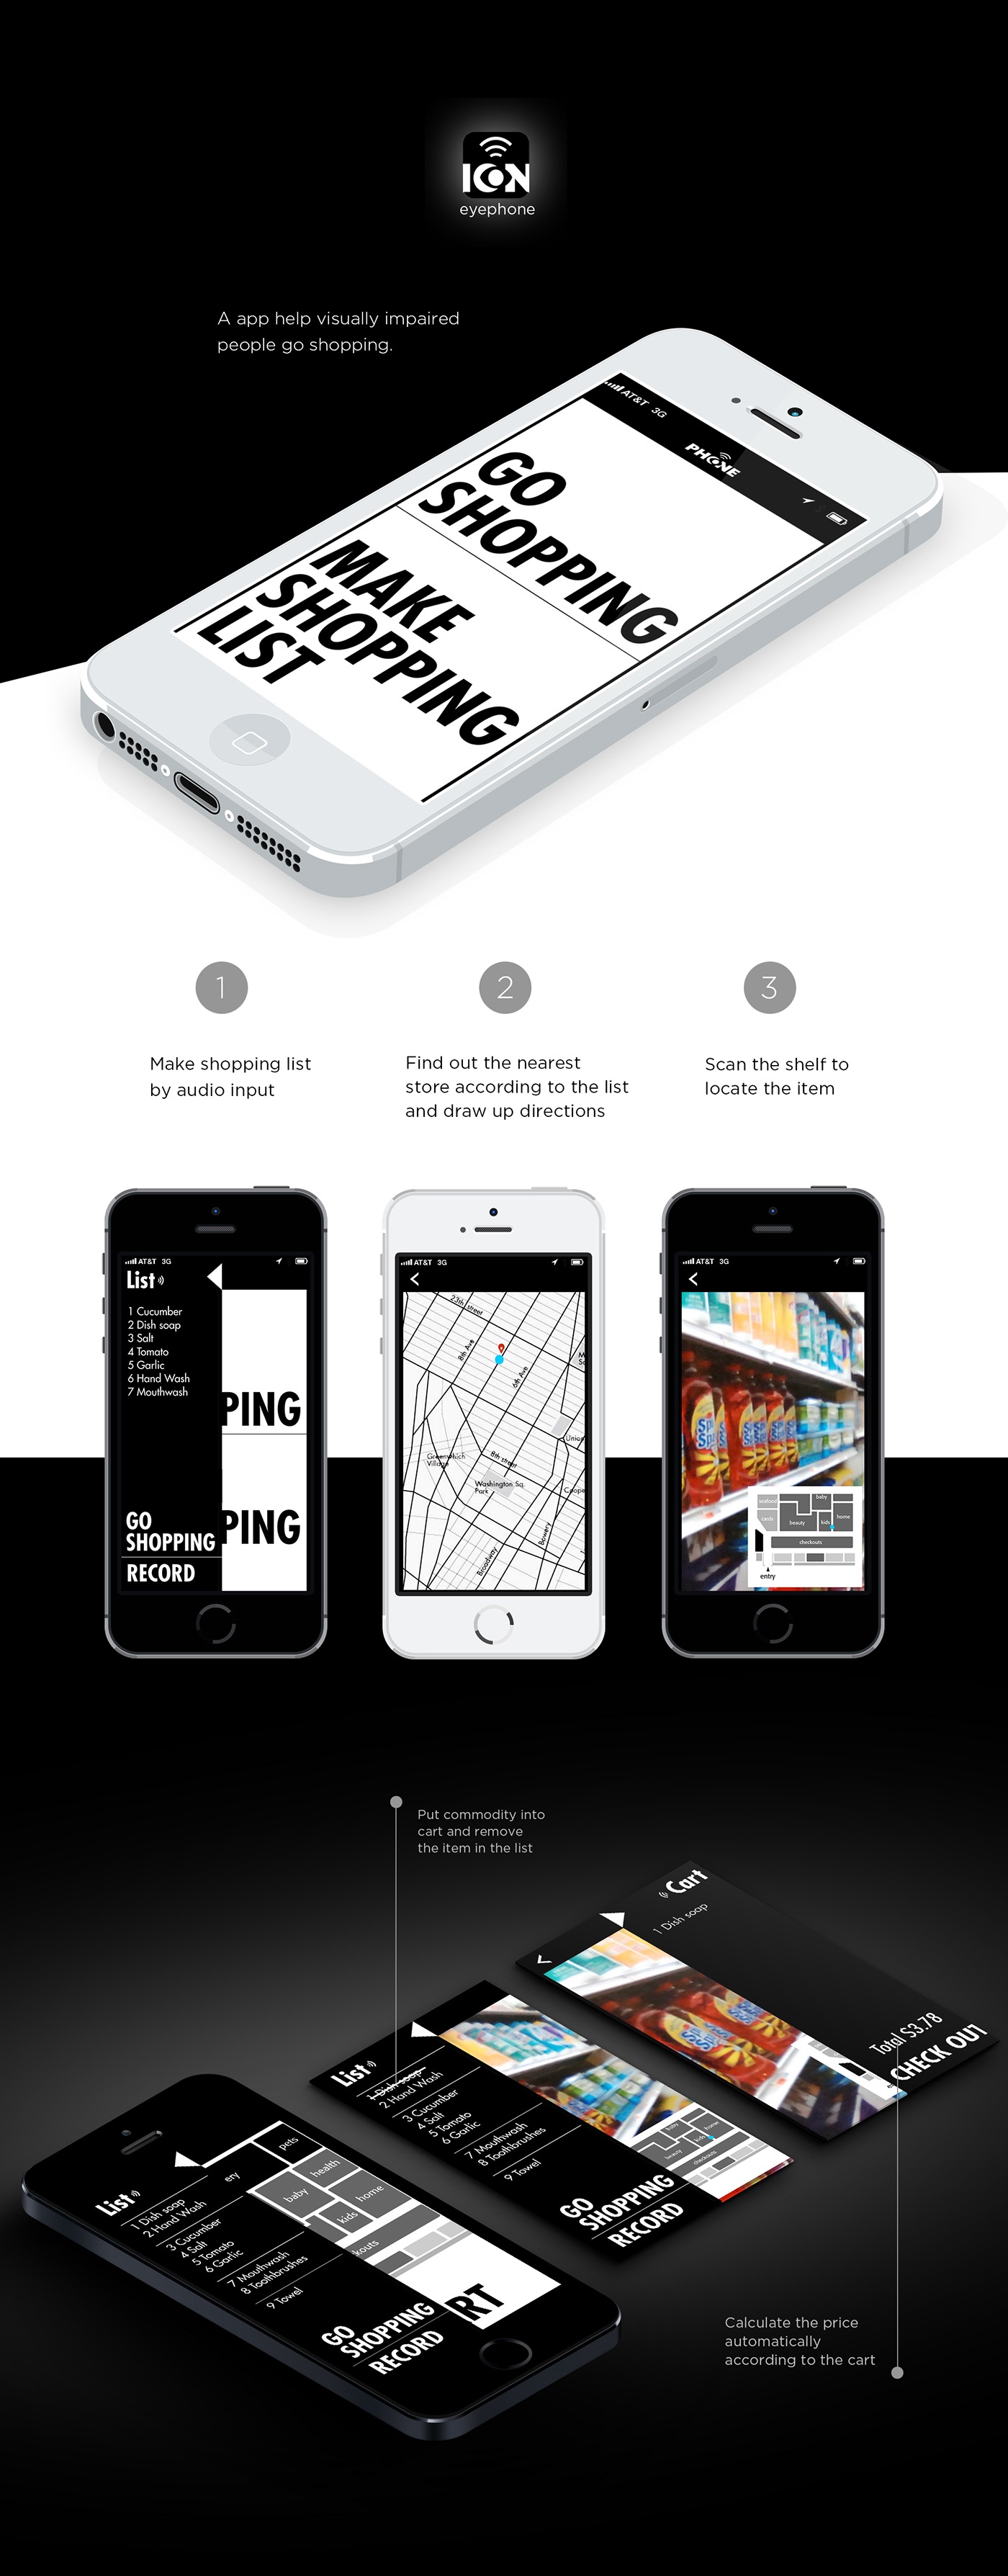 eyephone—An app design for visually impaired